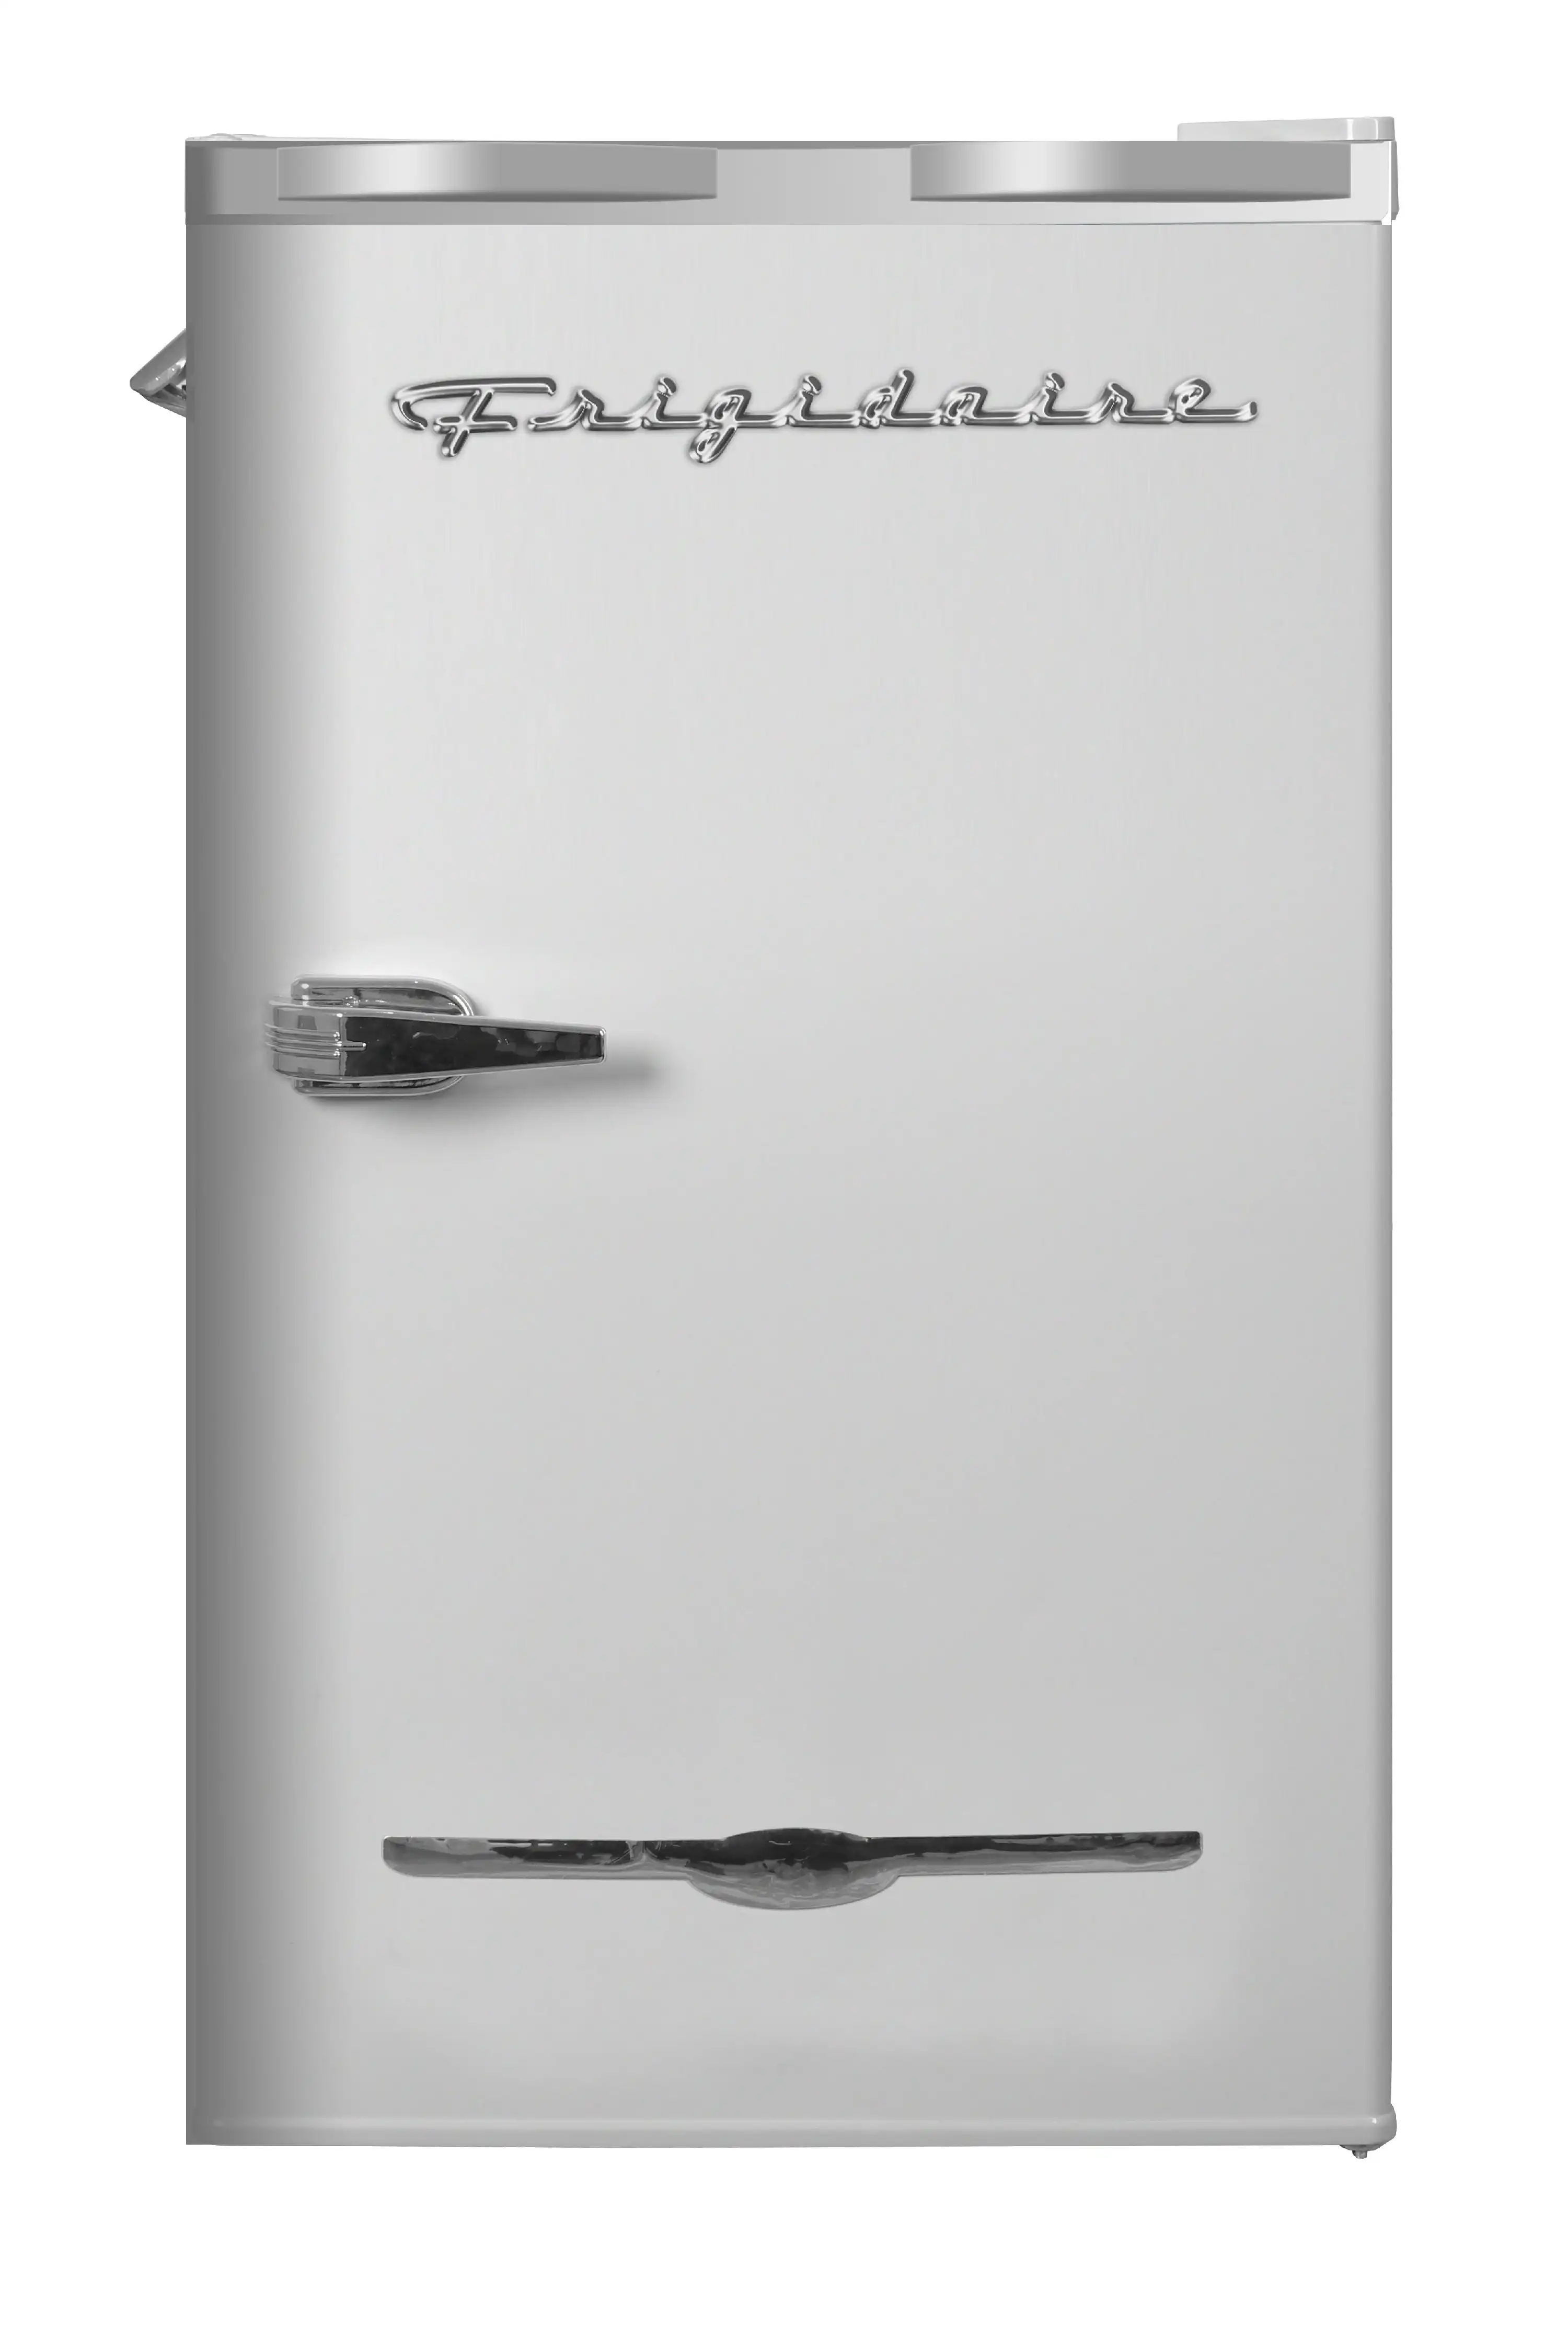 

Cu. ft. Retro компактный холодильник с боковой открывалкой для бутылок EFR376, лунный луч